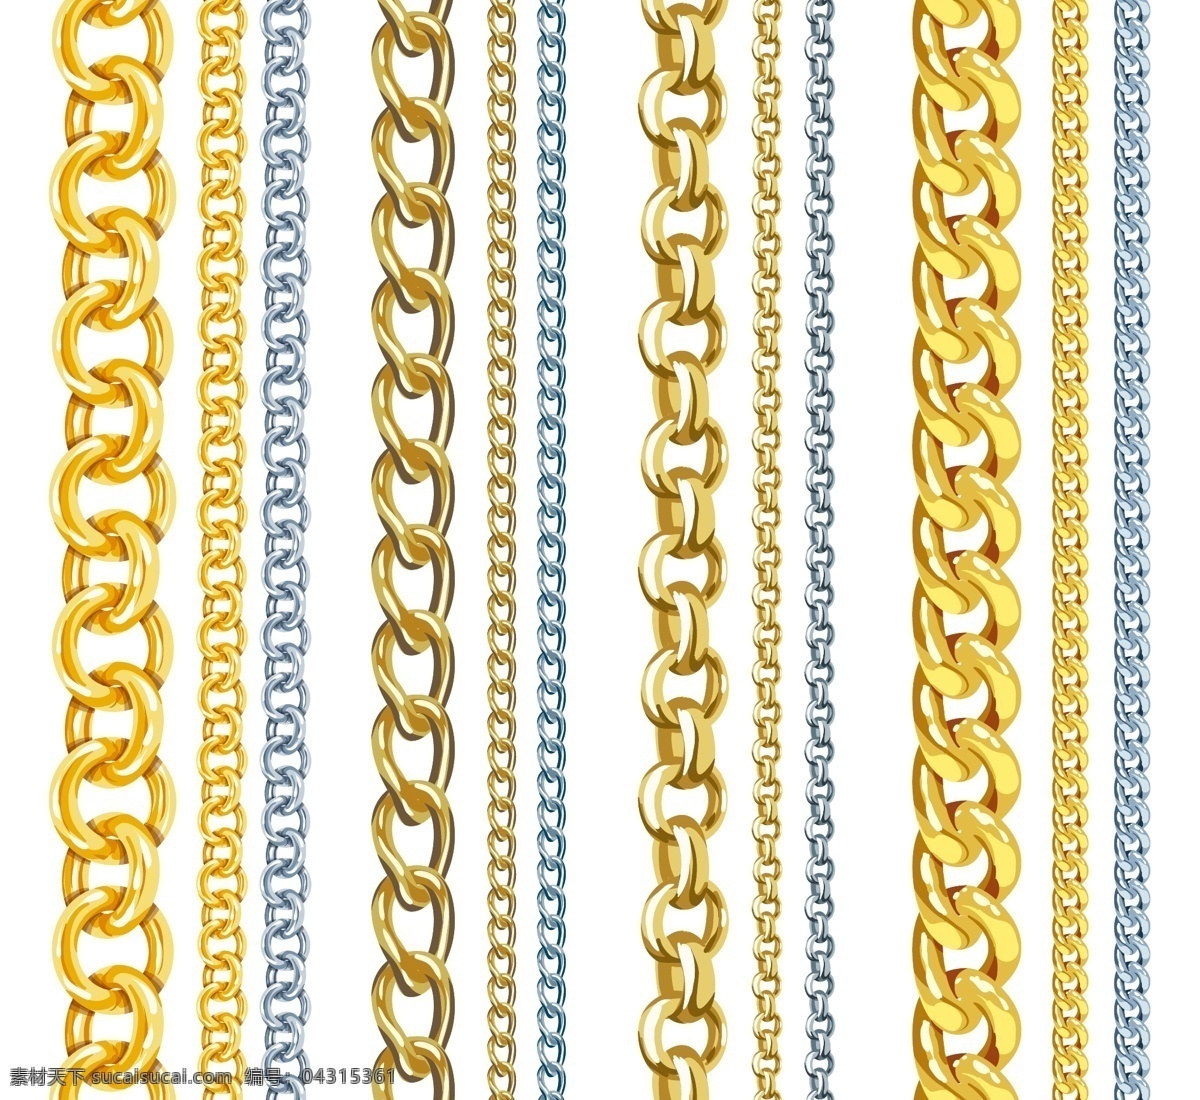 12款 金属链条设计 铁链 金属 链条 装饰 链子 矢量图 底纹边框 其他素材